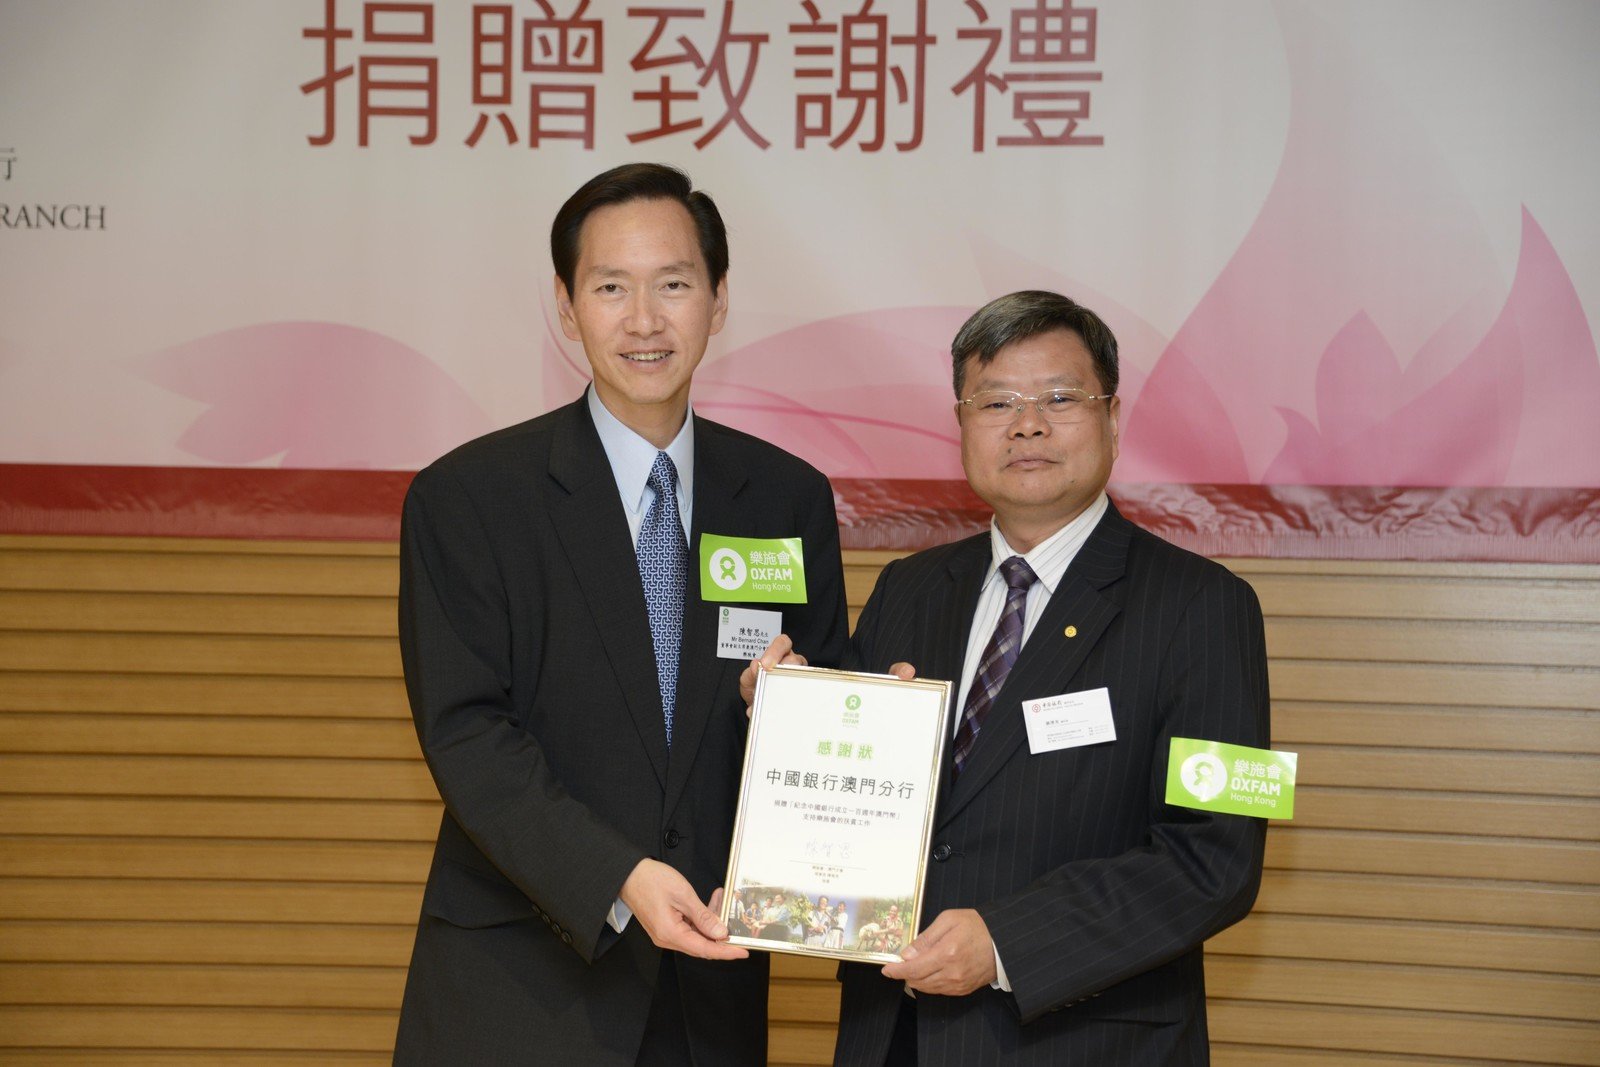 樂施會陳智思副主席(左)向中國銀行澳門分行劉澤光副行長(右)致送感謝狀。